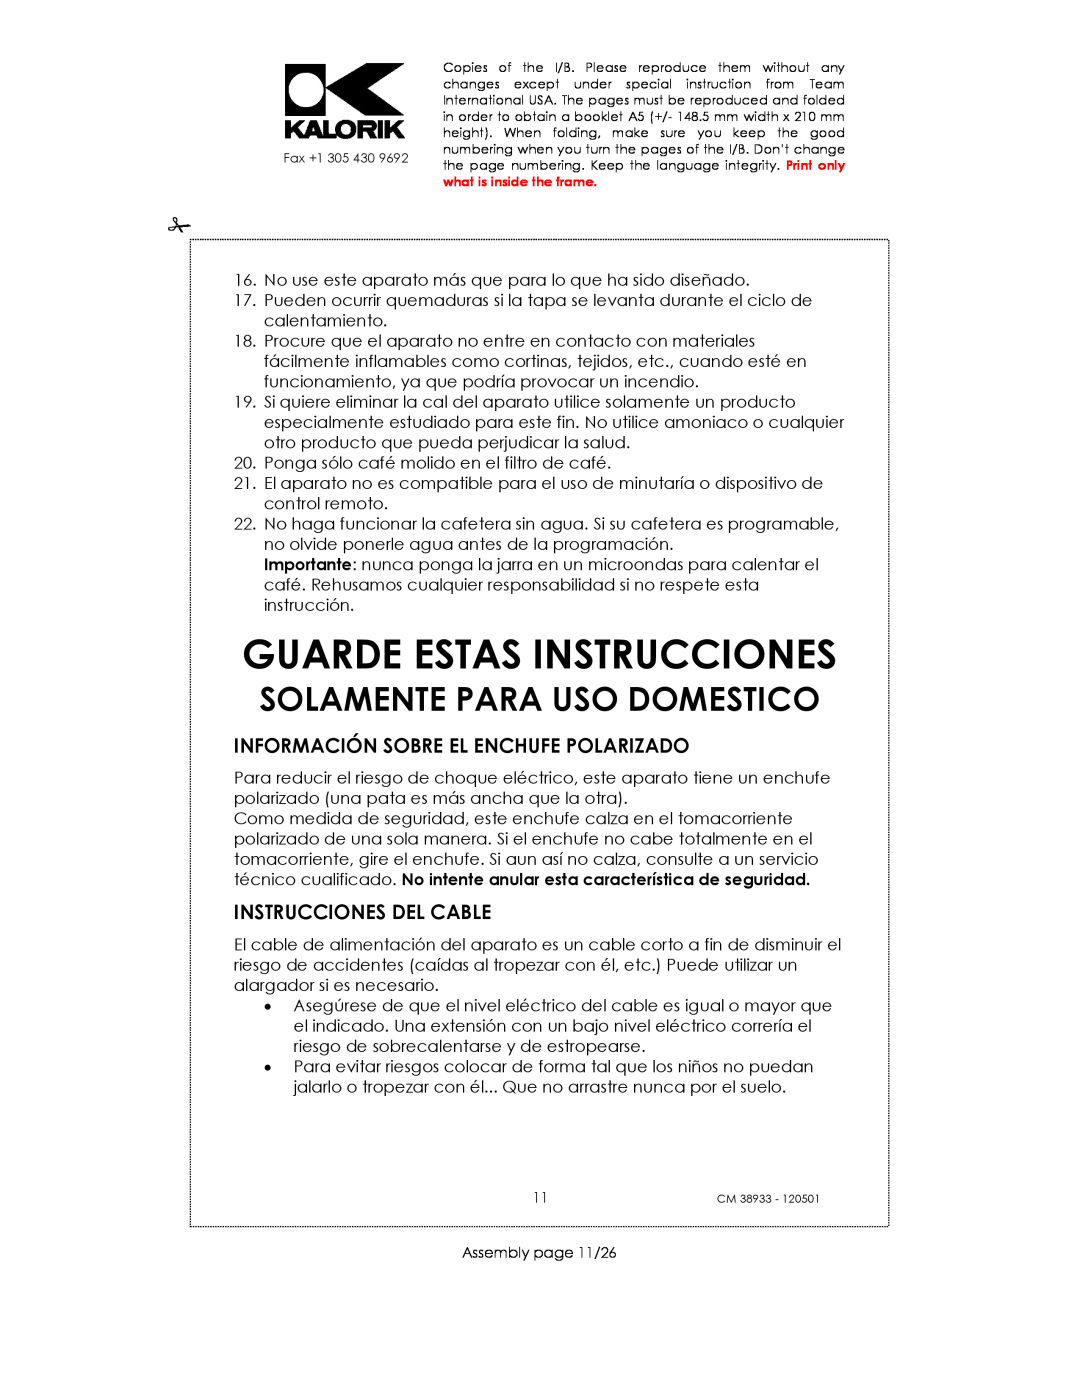 Kalorik CM 38933 manual Guarde Estas Instrucciones, Información Sobre El Enchufe Polarizado, Instrucciones Del Cable 